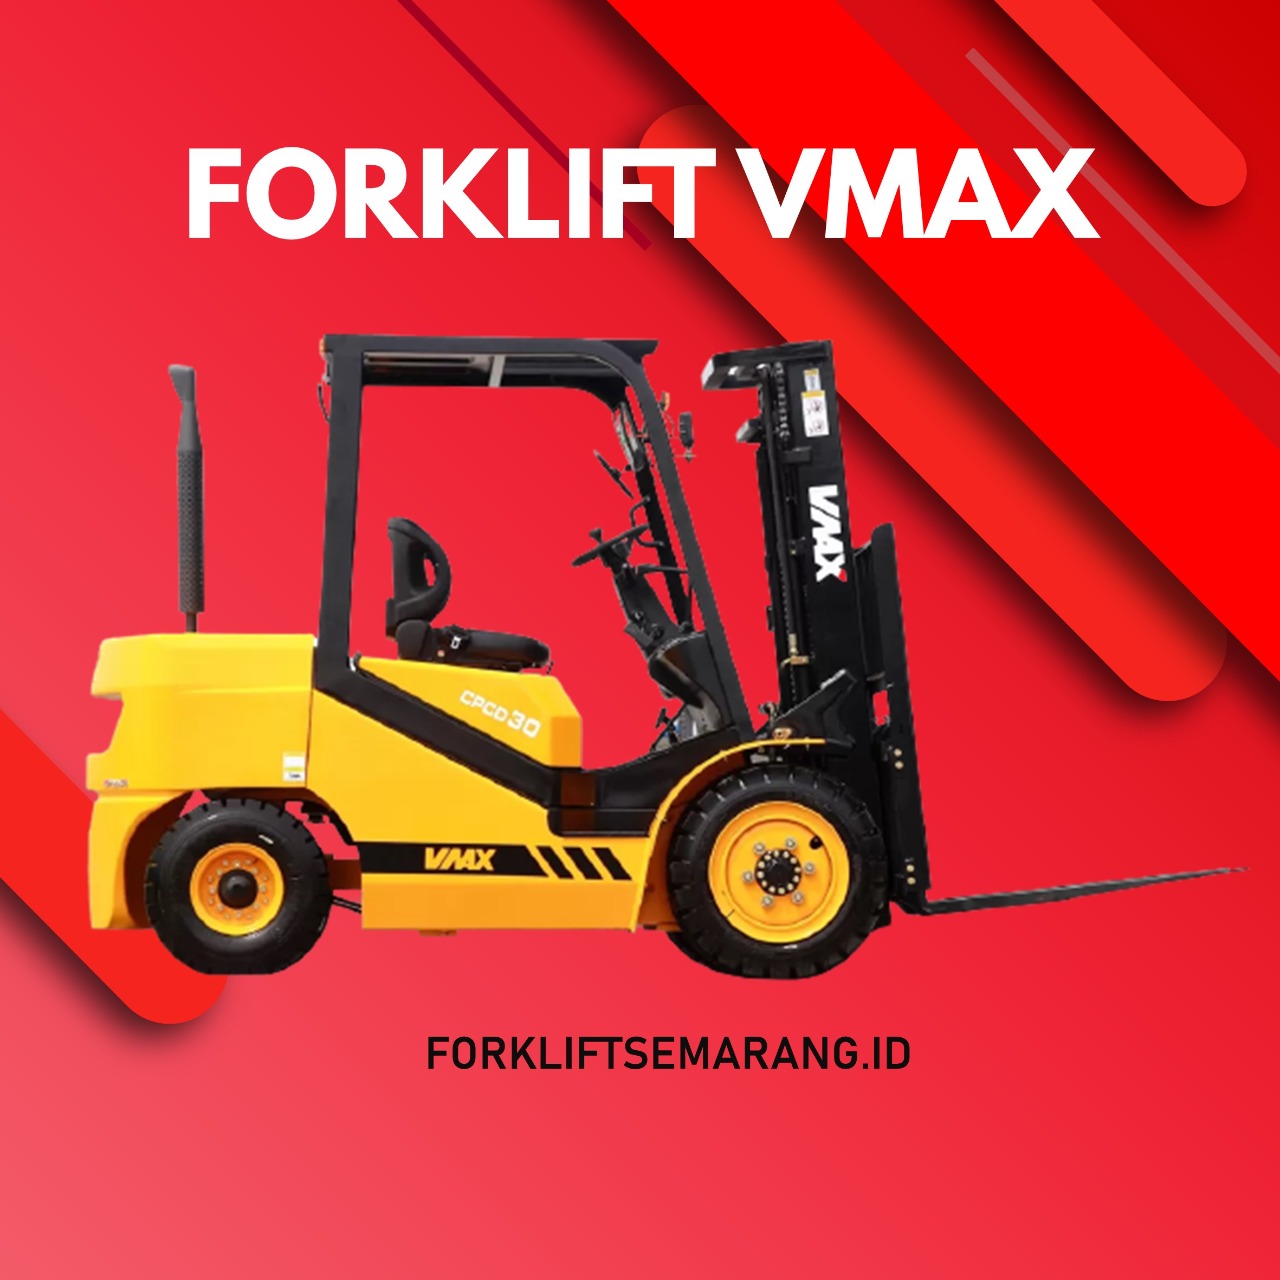 Kelebihan Forklift Diesel VMAX